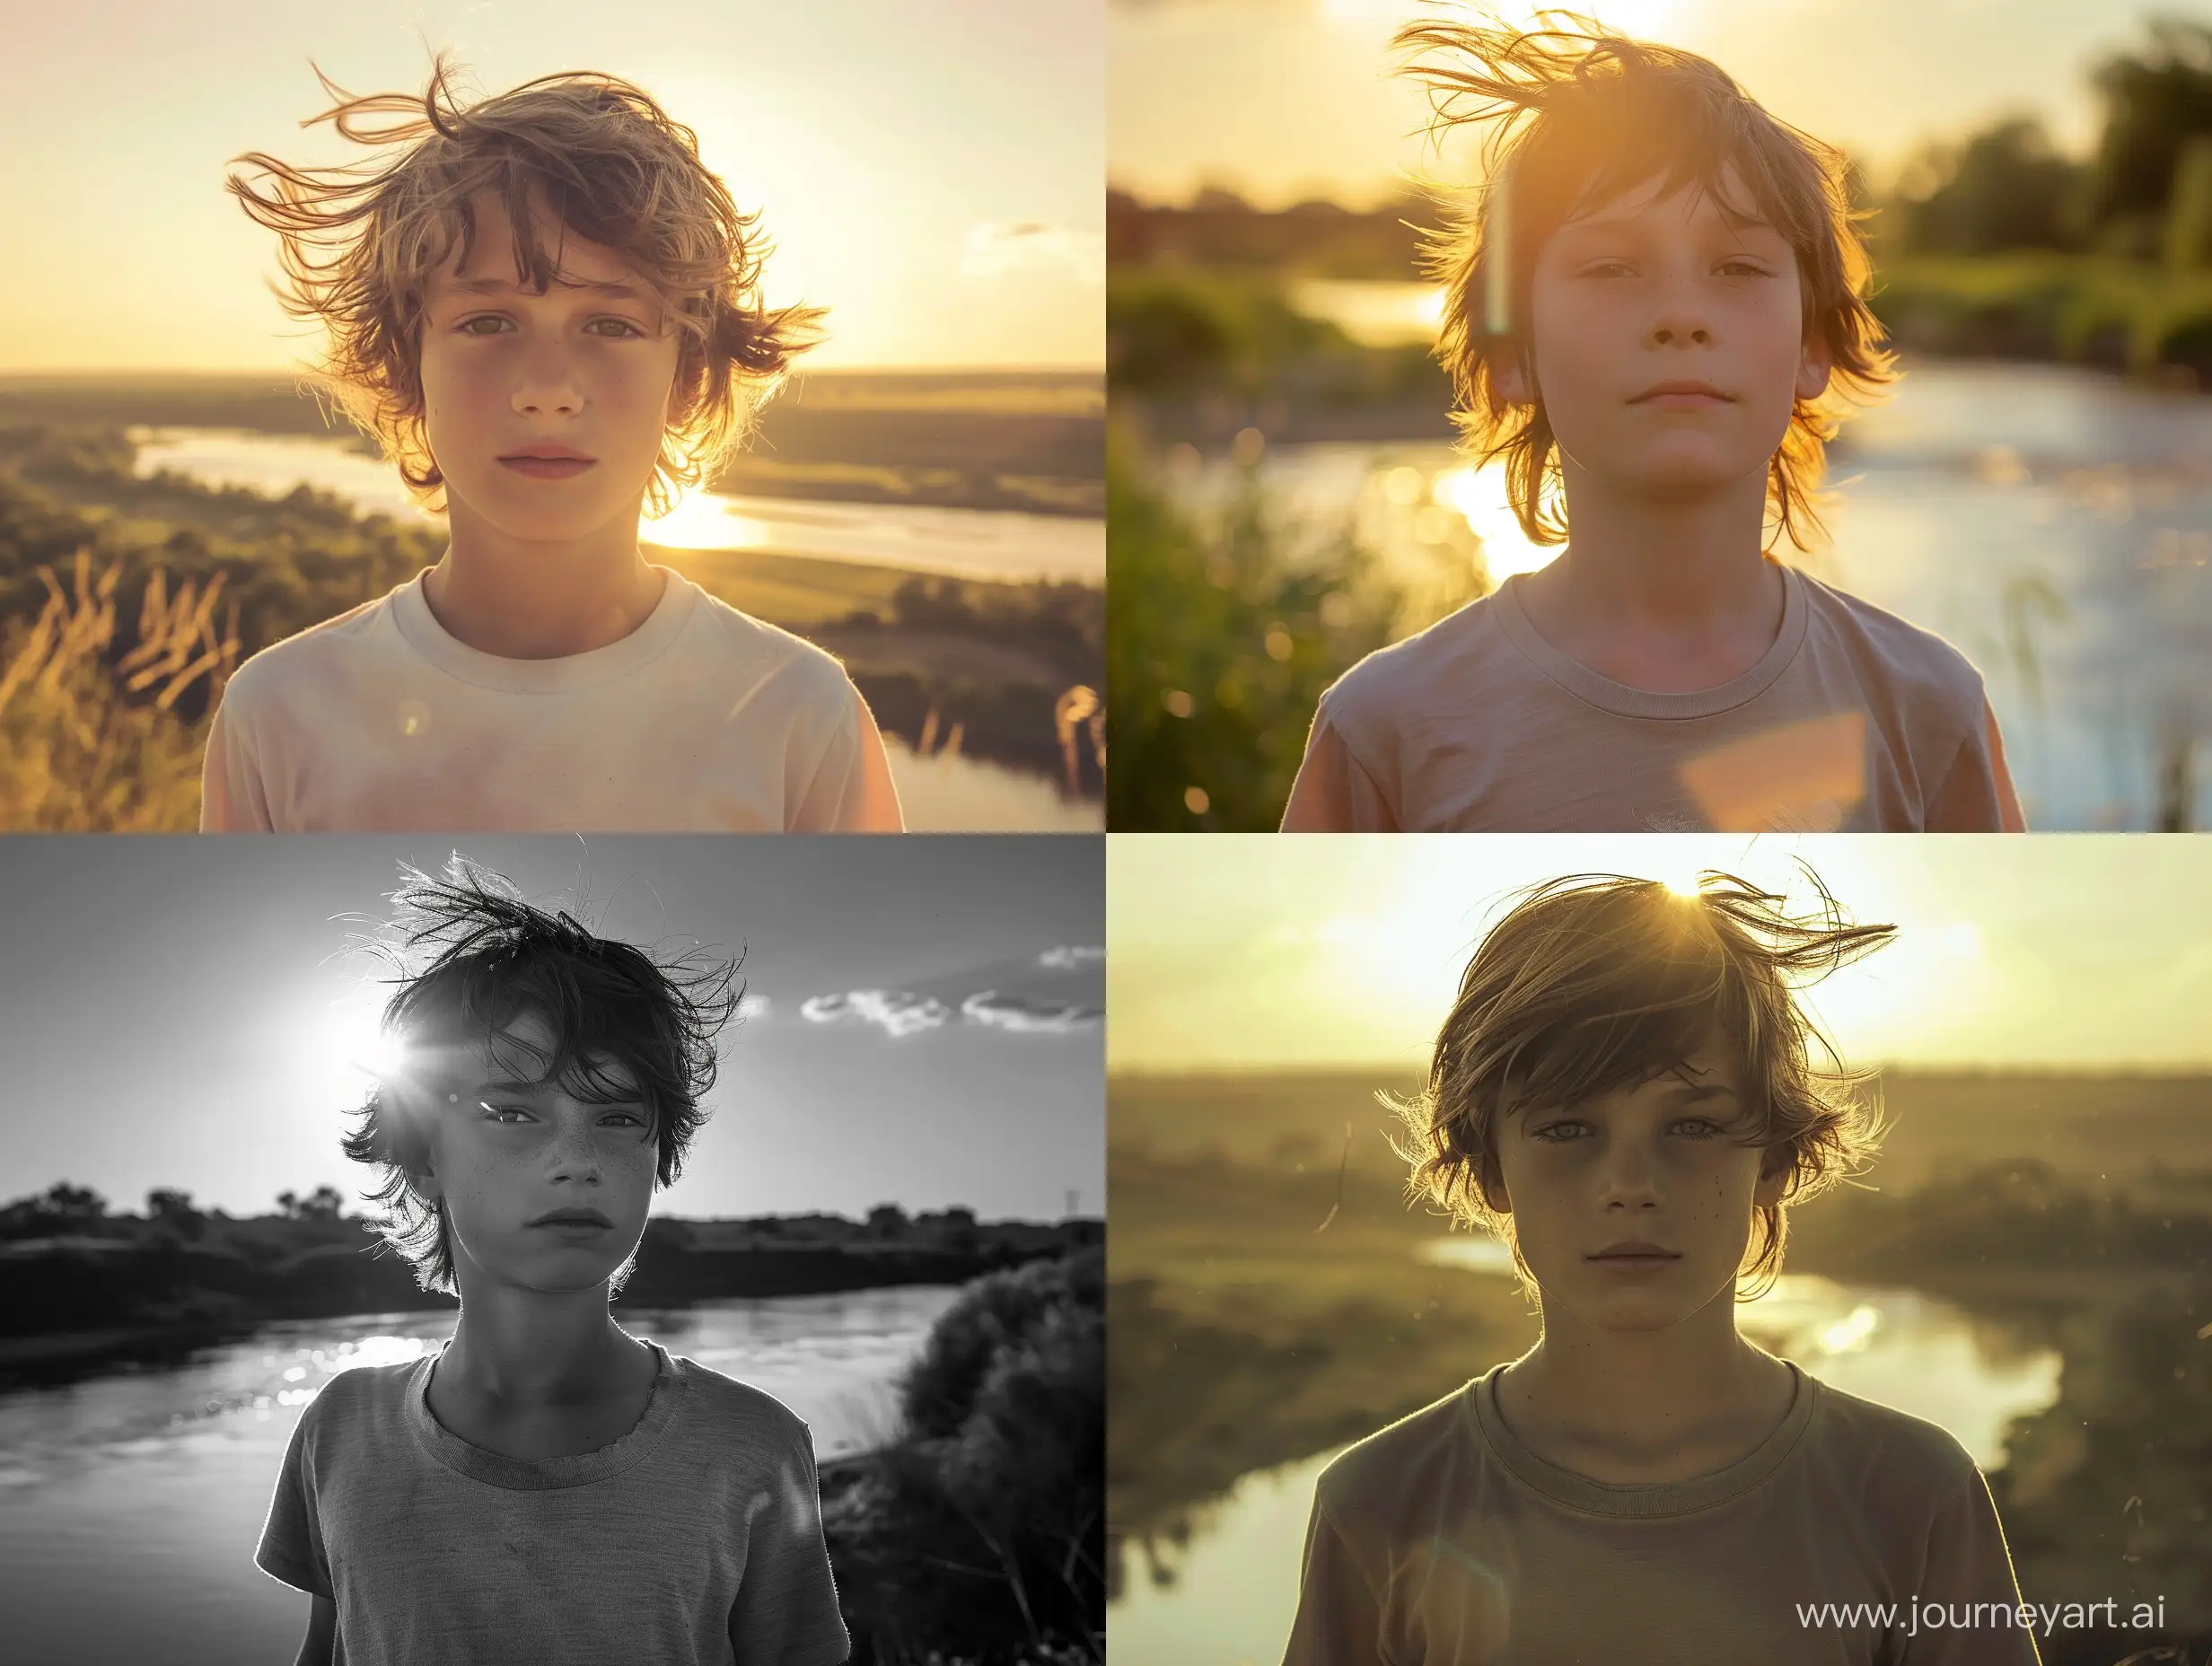 фото мальчика 12 лет , портрет по грудь,анфас ,в майке, полдень,ветер обдувает волосы,освещен солнцем, смотрит в даль ,на фоне реки,